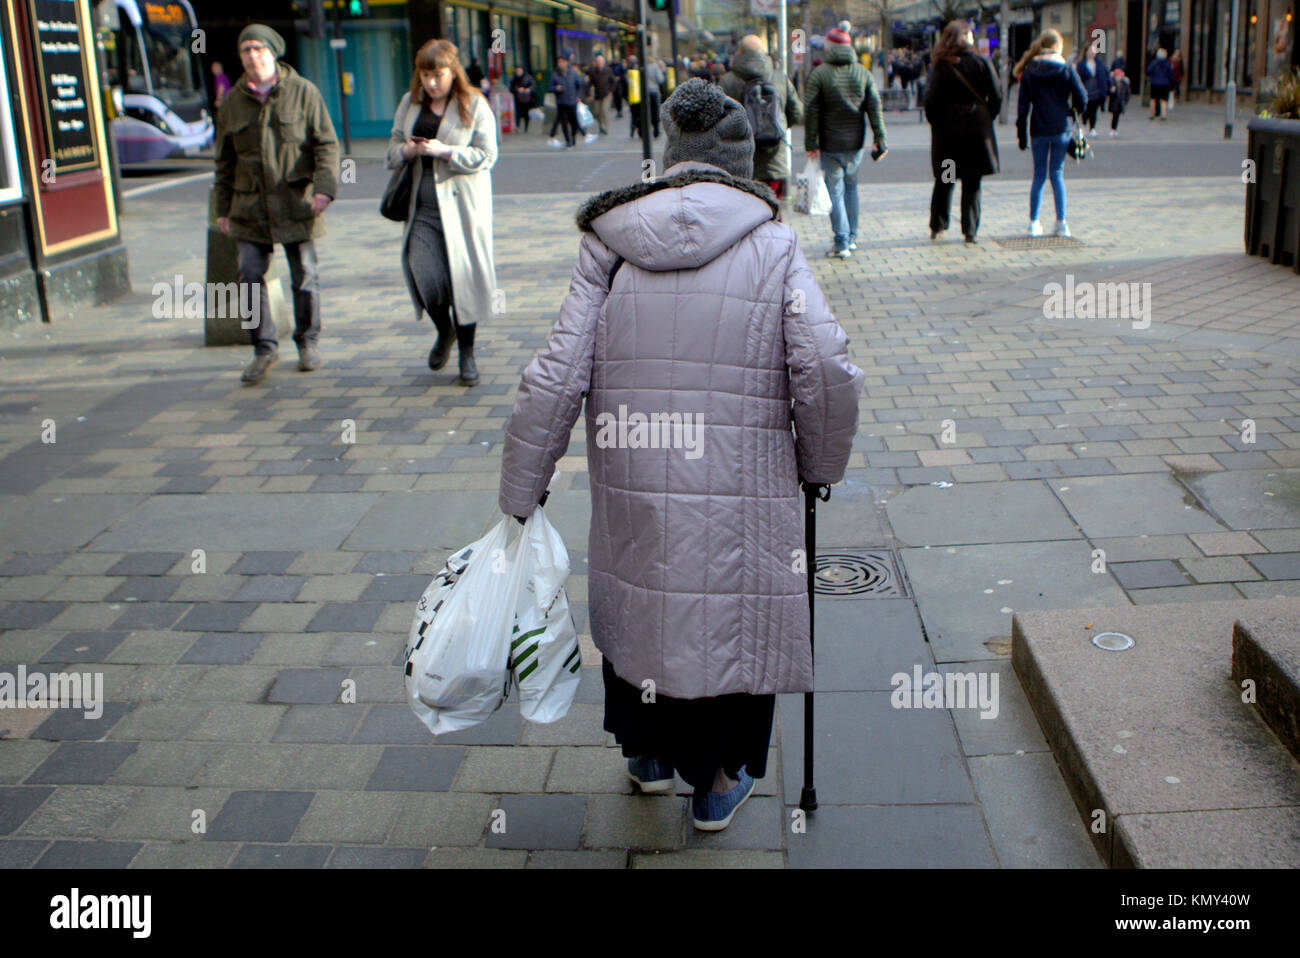 Old Lady senior citizen alle prese con un bastone da passeggio e shopping bags visto da dietro sulla Sauchiehall Street zona pedonale di Glasgow Foto Stock